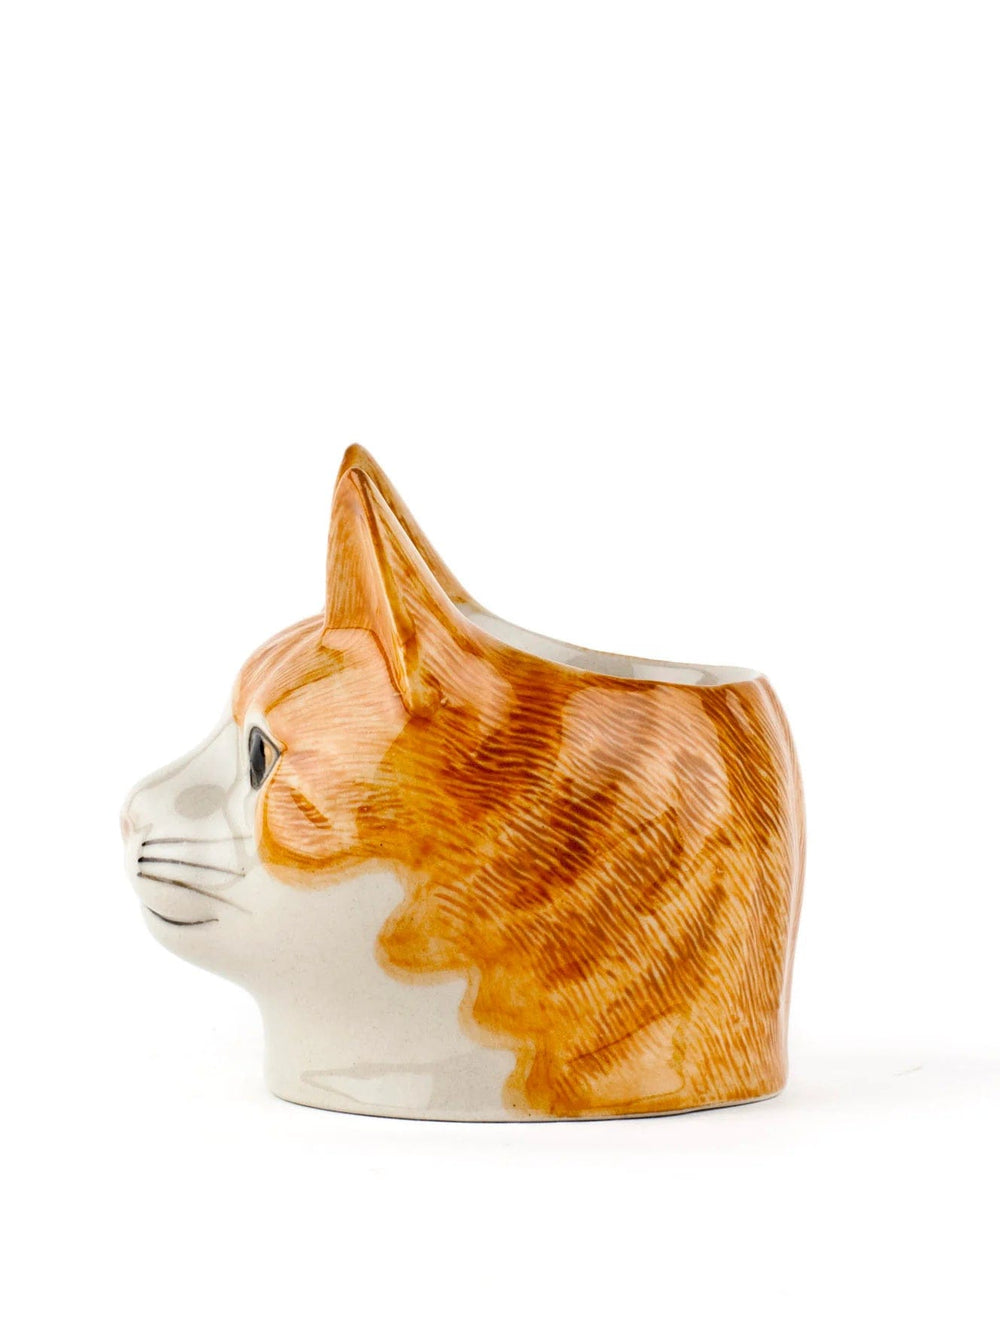 Quail Ceramics interiør Eggeglass - katten Squash